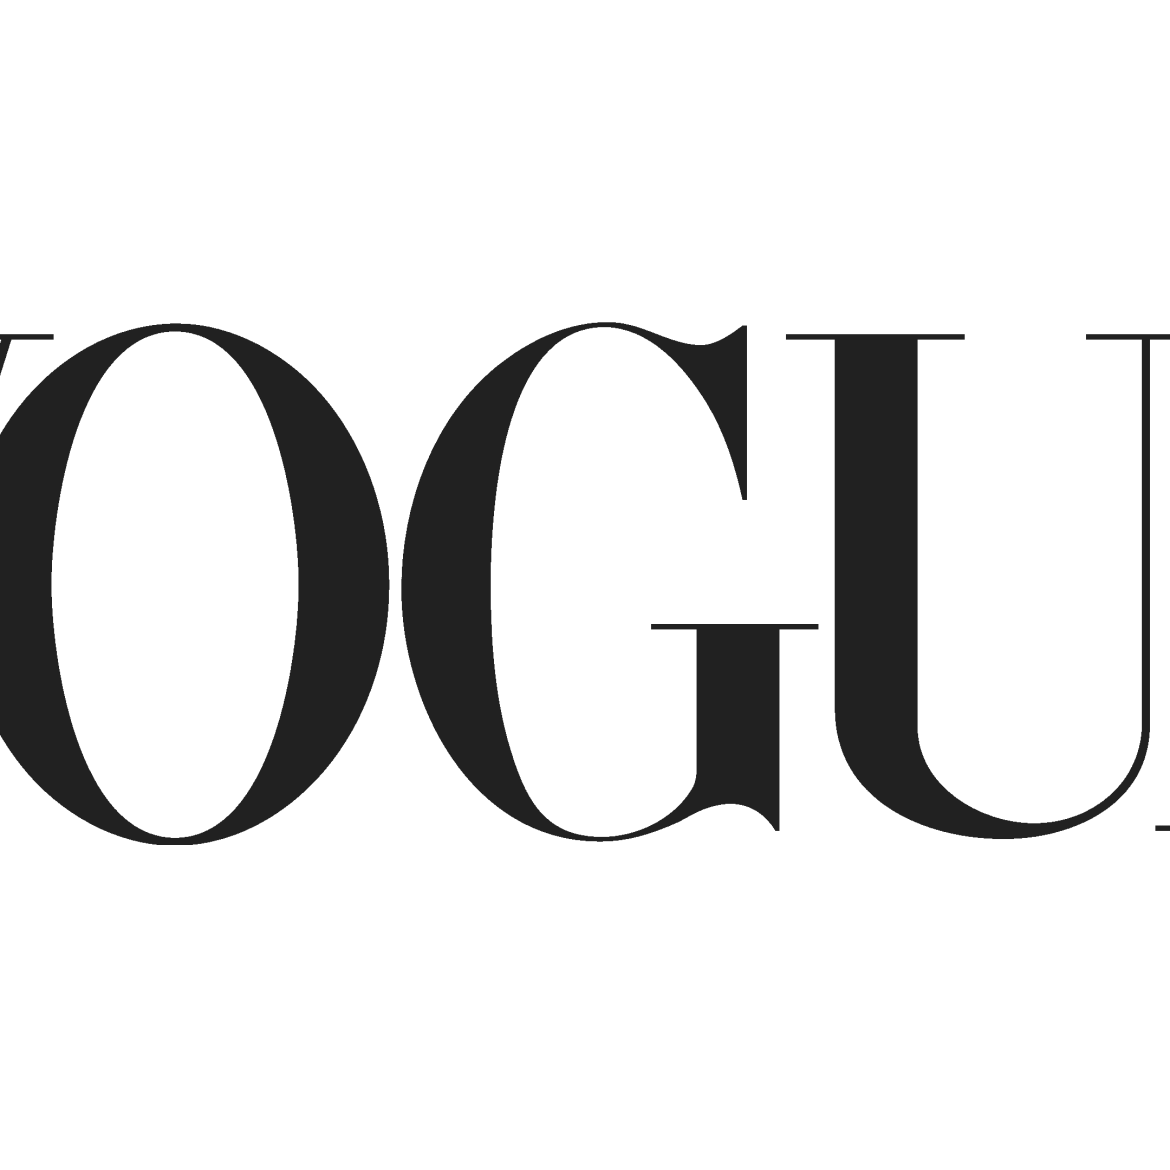 Vogue-logo